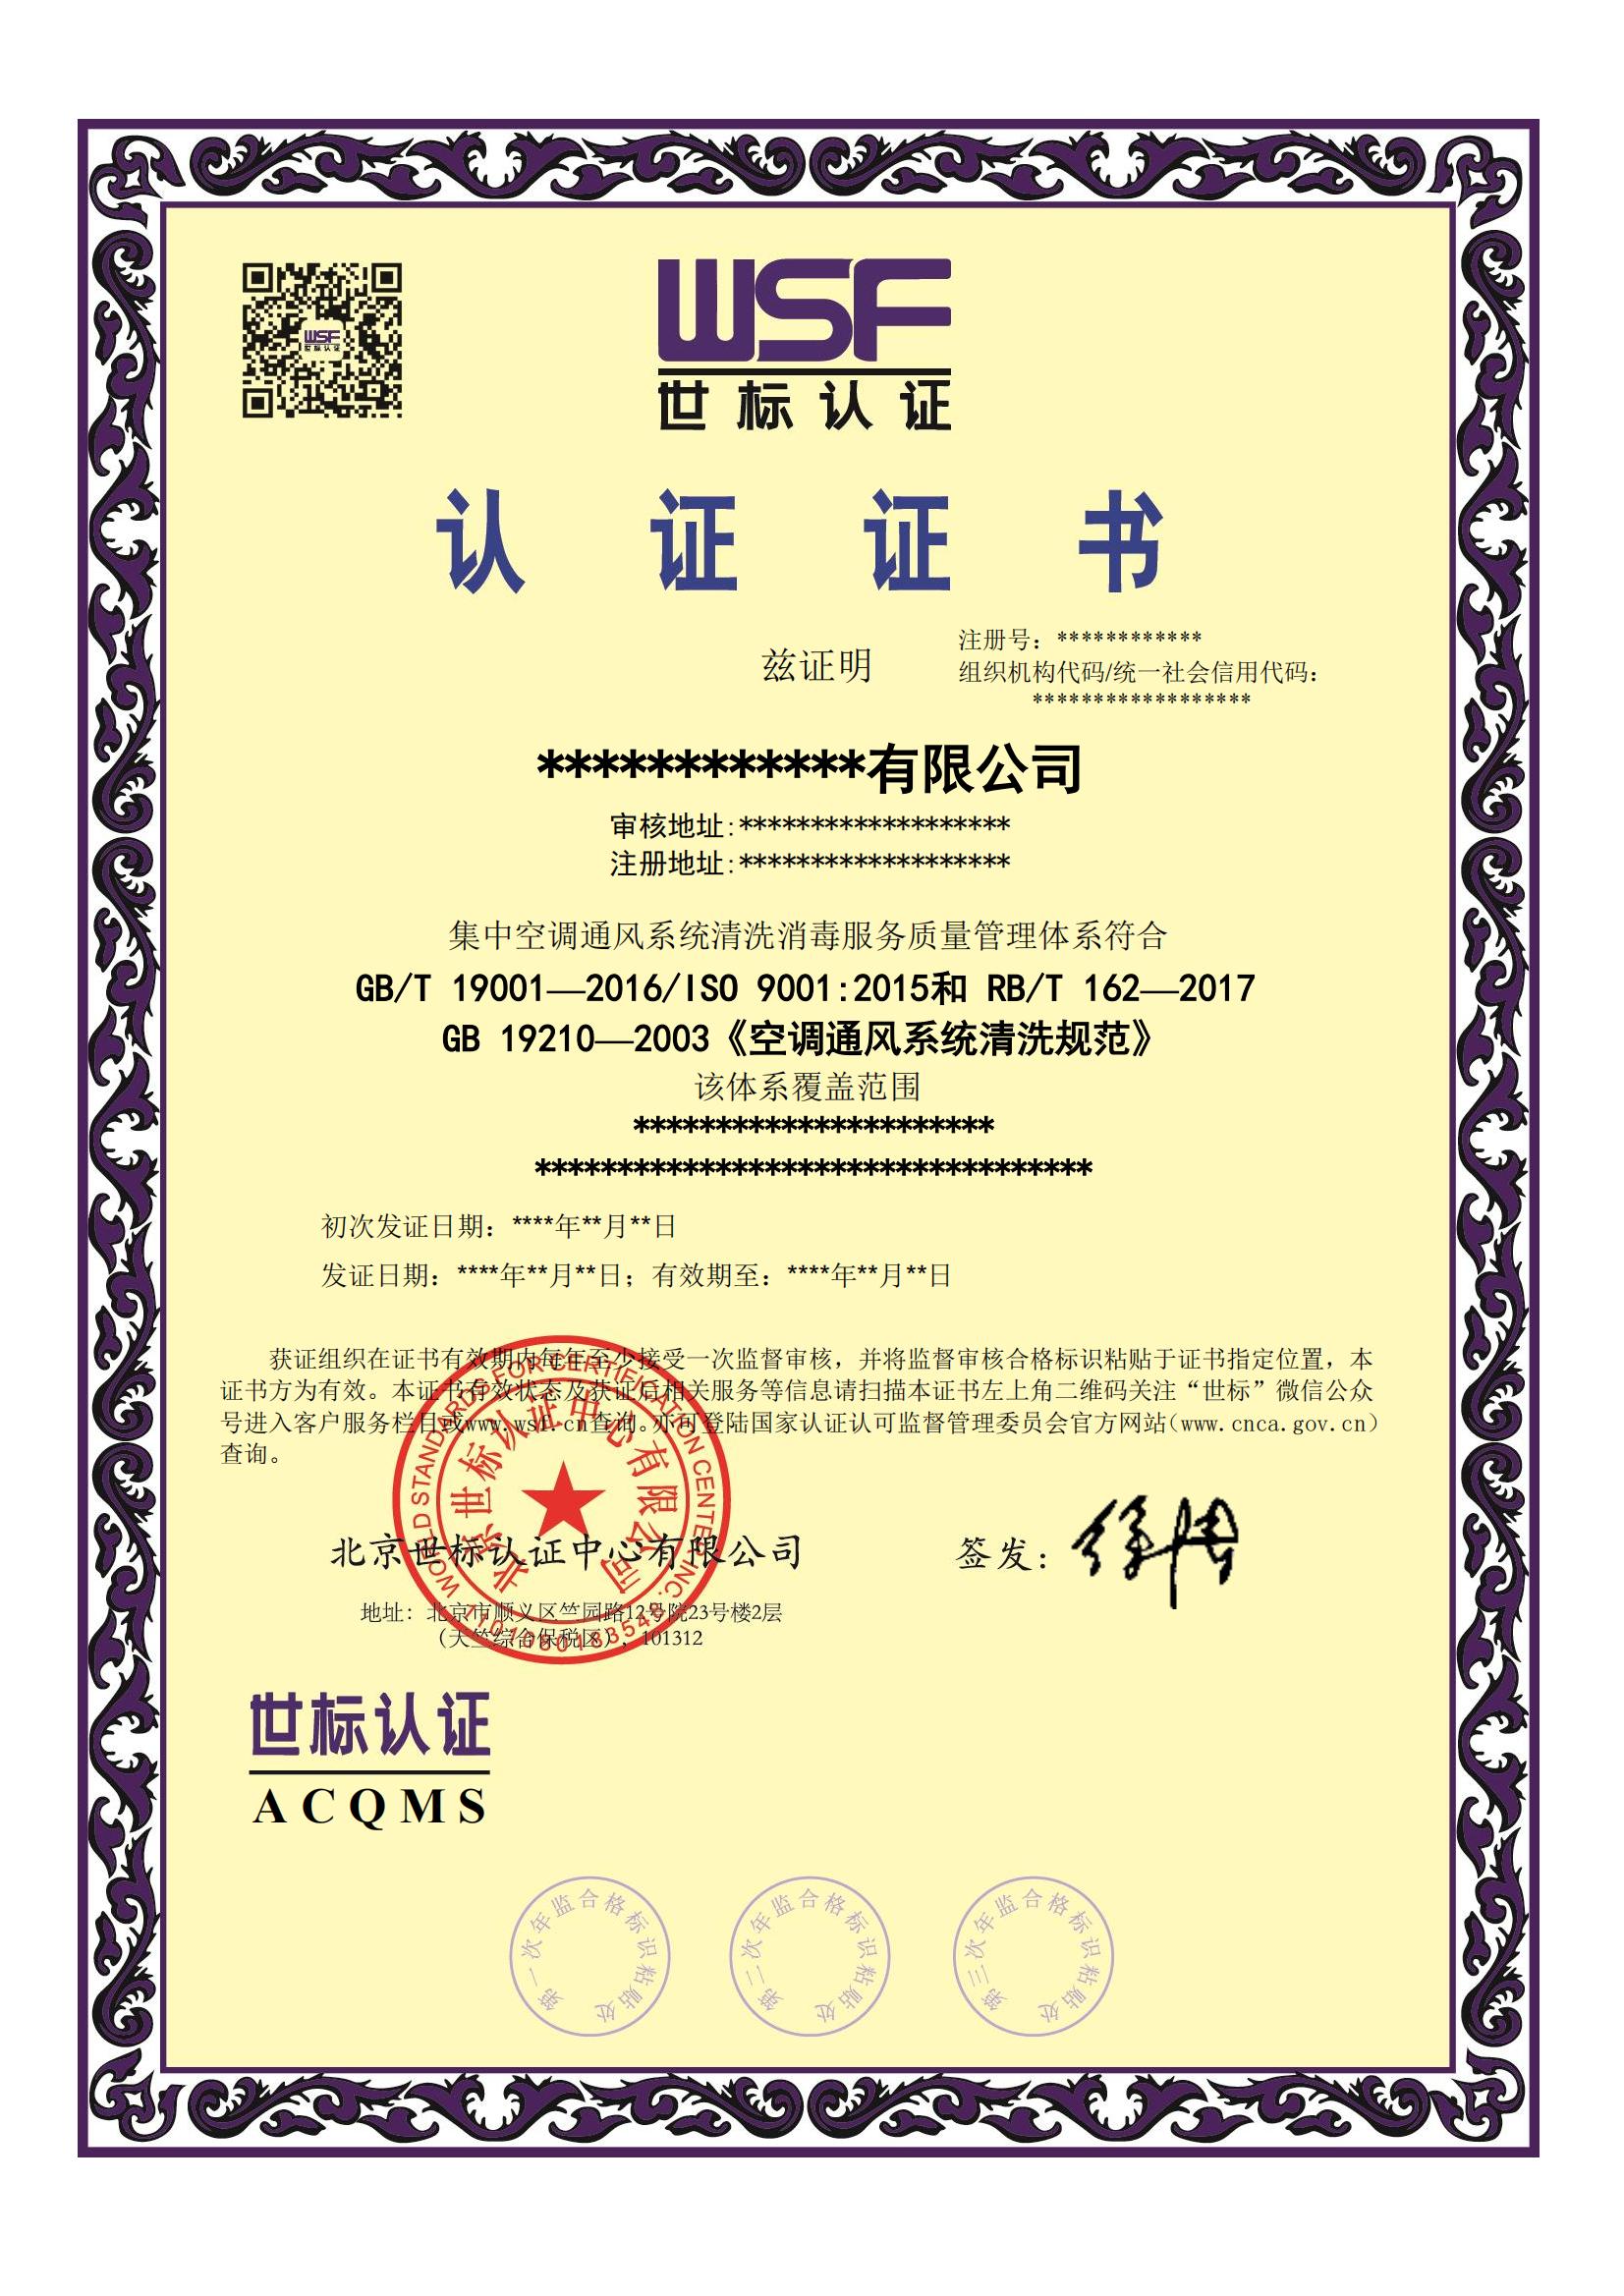 集中空调通风系统清洗消毒服务质量管理体系证书-中文_00.jpg